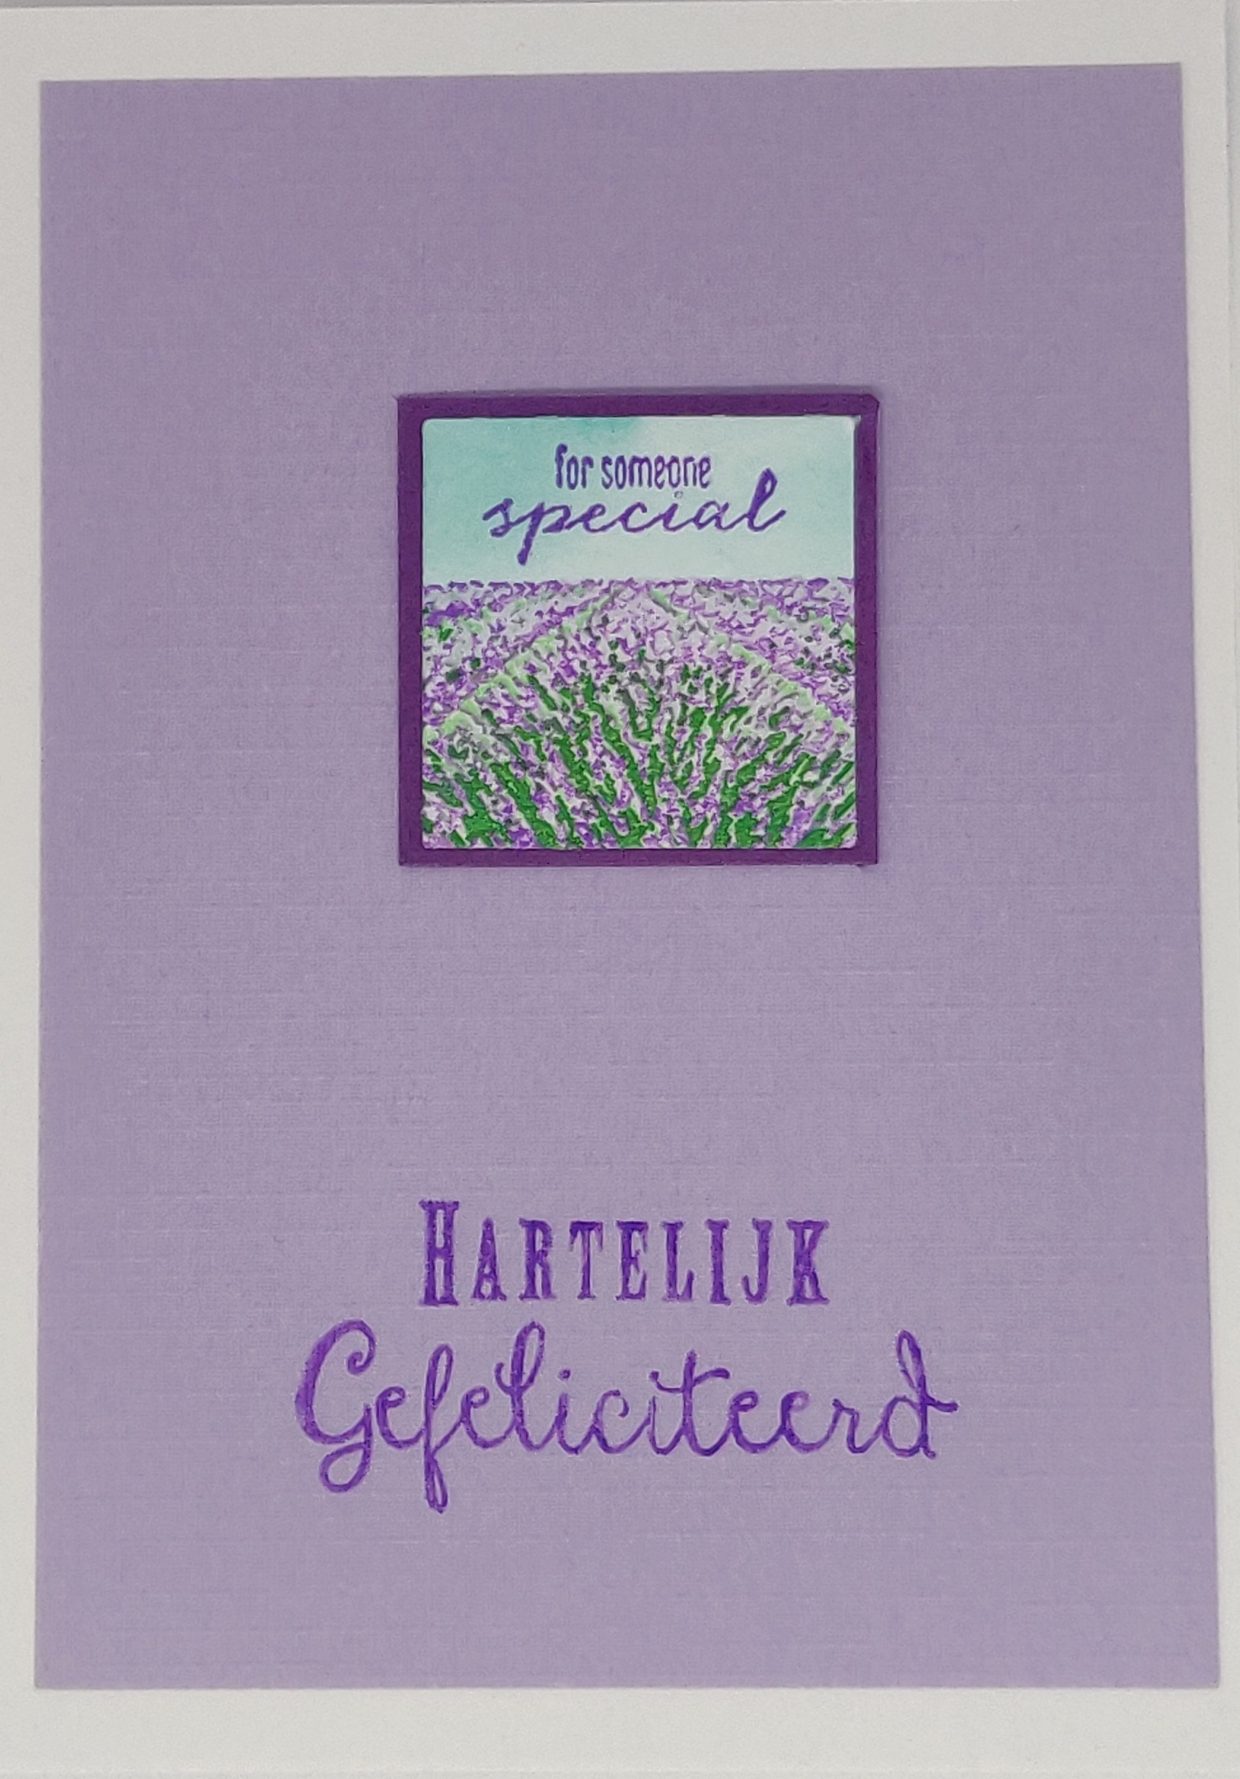 Bladwijzer Lavendel